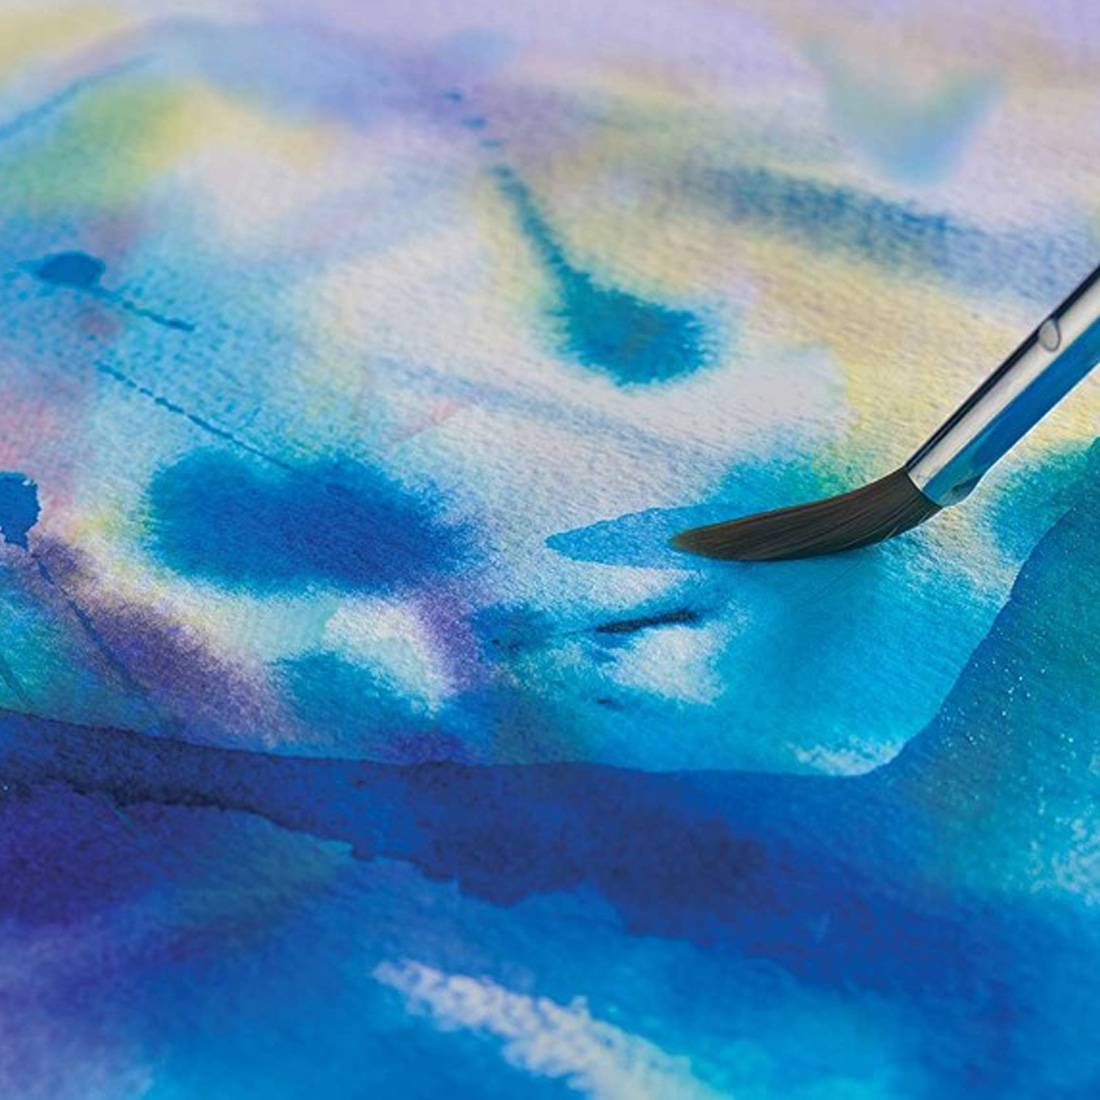 Talens Art Creation Malerskrin ‑ 12 farger, pensel og svamp